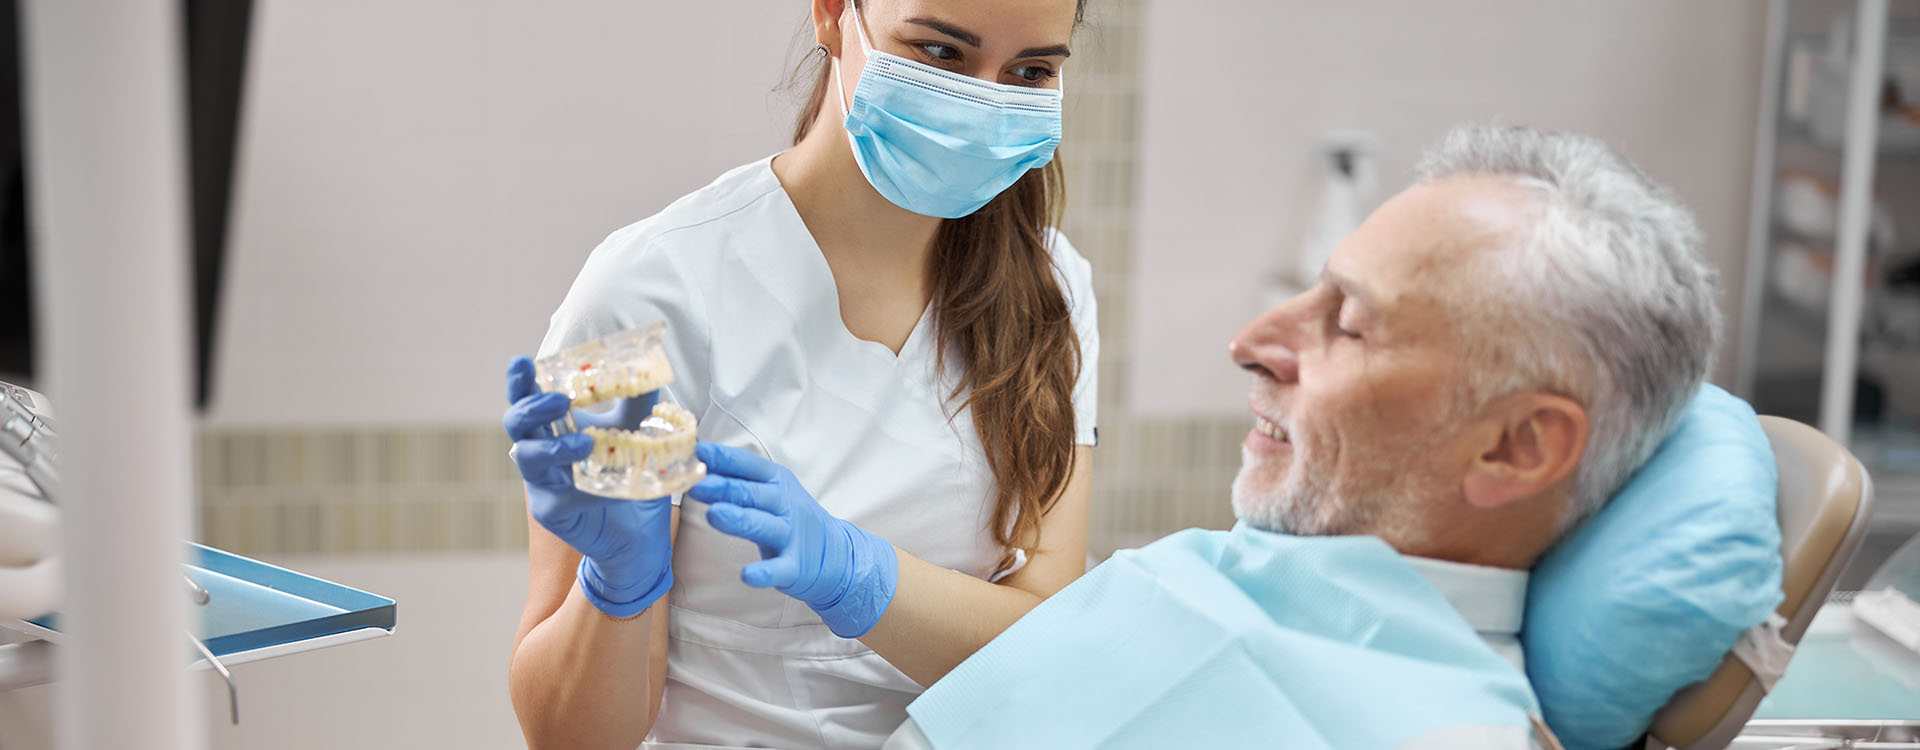 Clínica Dental Andrea Compte, tu Centro Odontológico especializado. Implantes dentales (Implantología) en Alcossebre. Dentista explicando los implantes dentales al paciente.